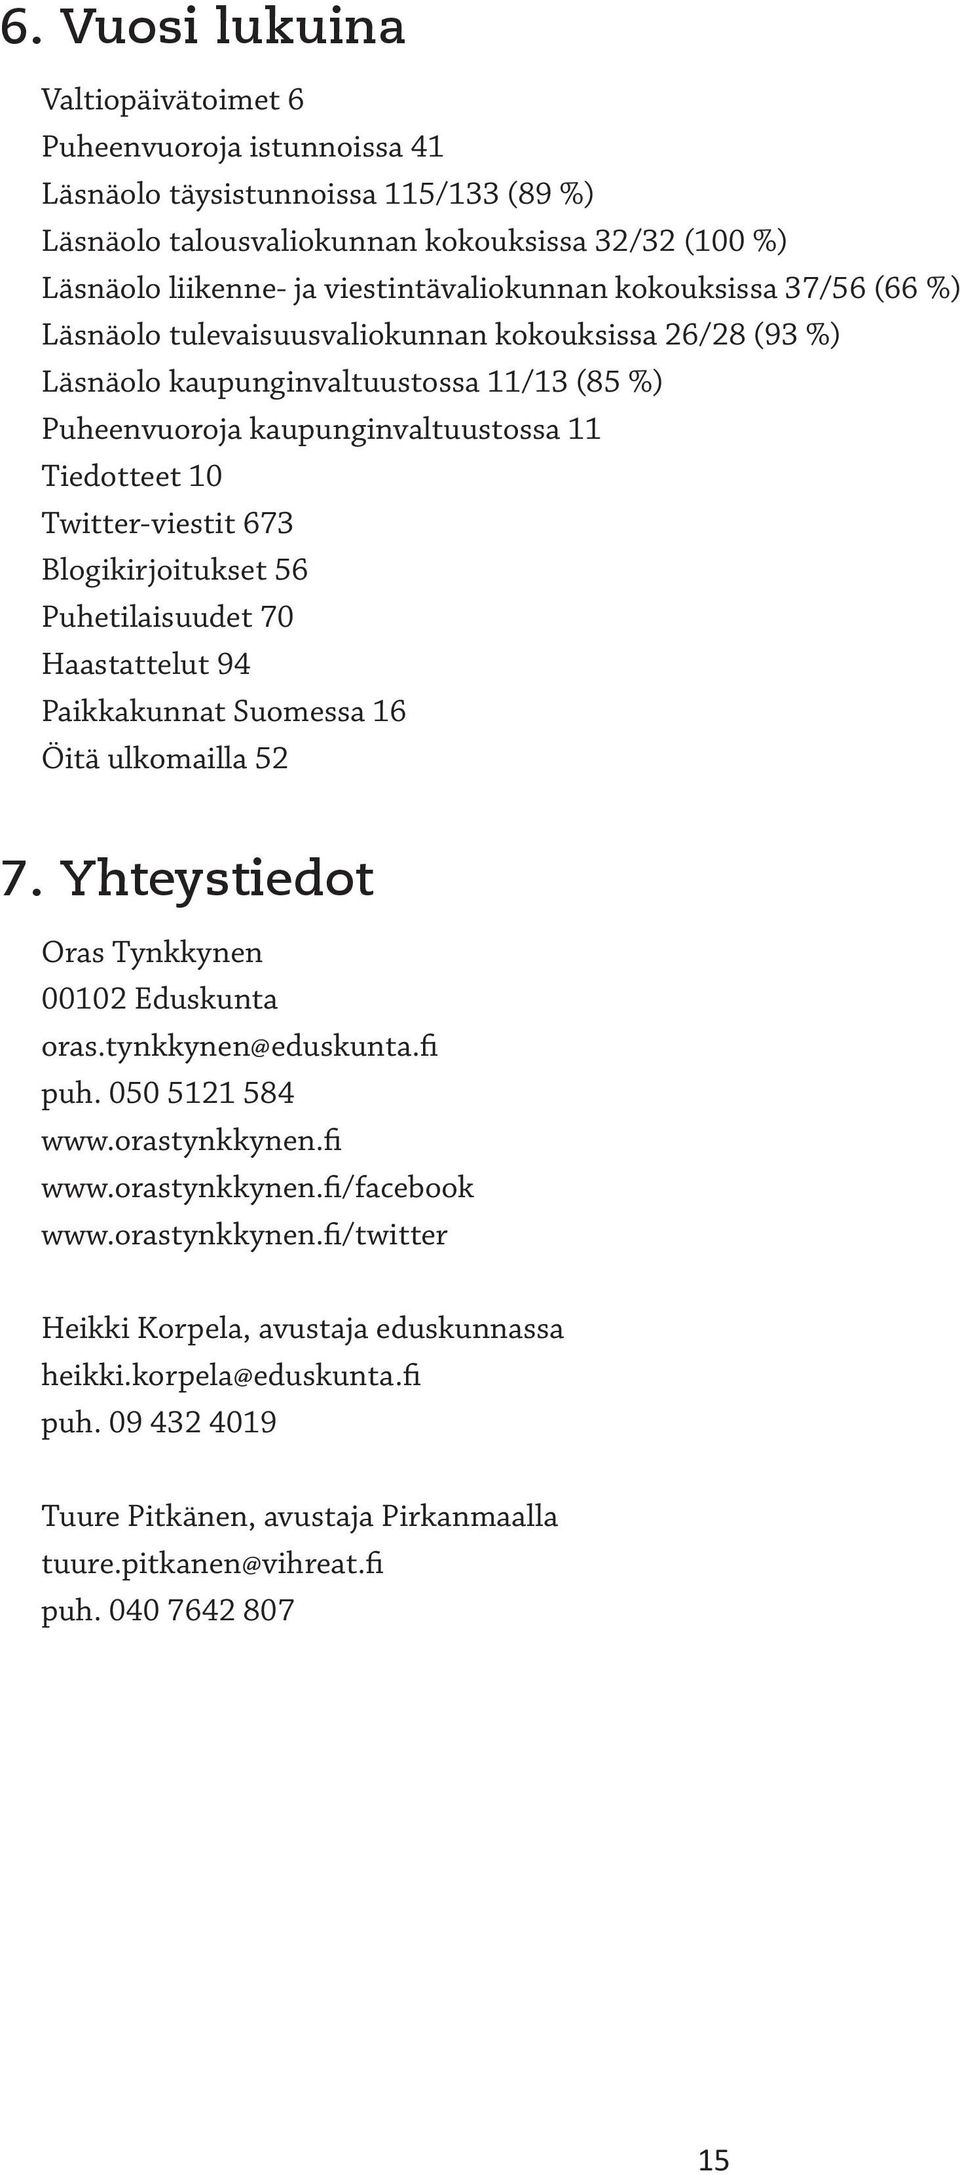 Twitter-viestit 673 Blogikirjoitukset 56 Puhetilaisuudet 70 Haastattelut 94 Paikkakunnat Suomessa 16 Öitä ulkomailla 52 7. Yhteystiedot Oras Tynkkynen 00102 Eduskunta oras.tynkkynen@eduskunta.fi puh.